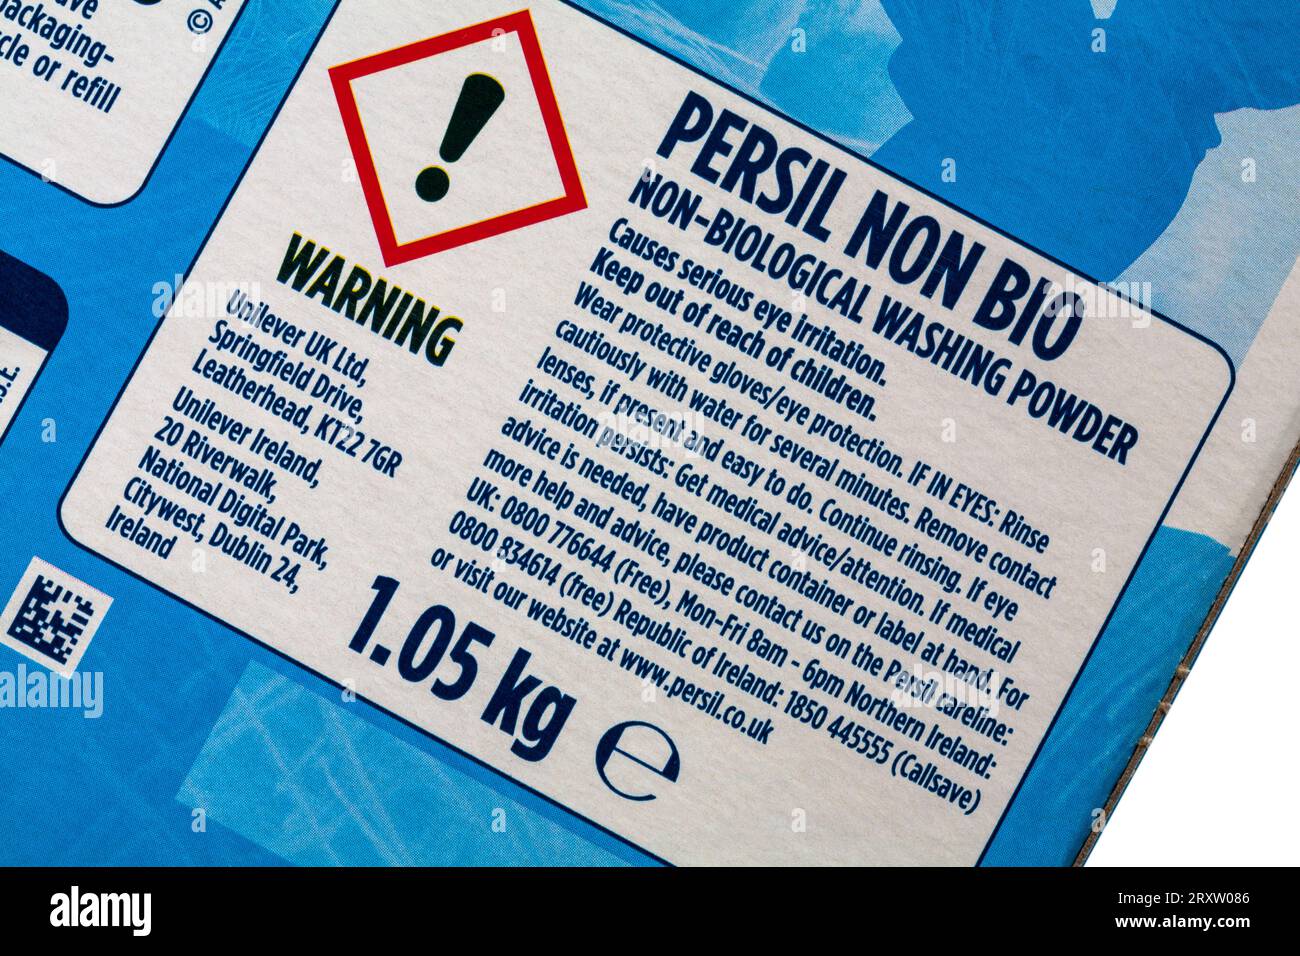 Warnhinweise auf der Packung Persil Non Bio Gentle neben empfindlichem Hautwaschpulver Stockfoto